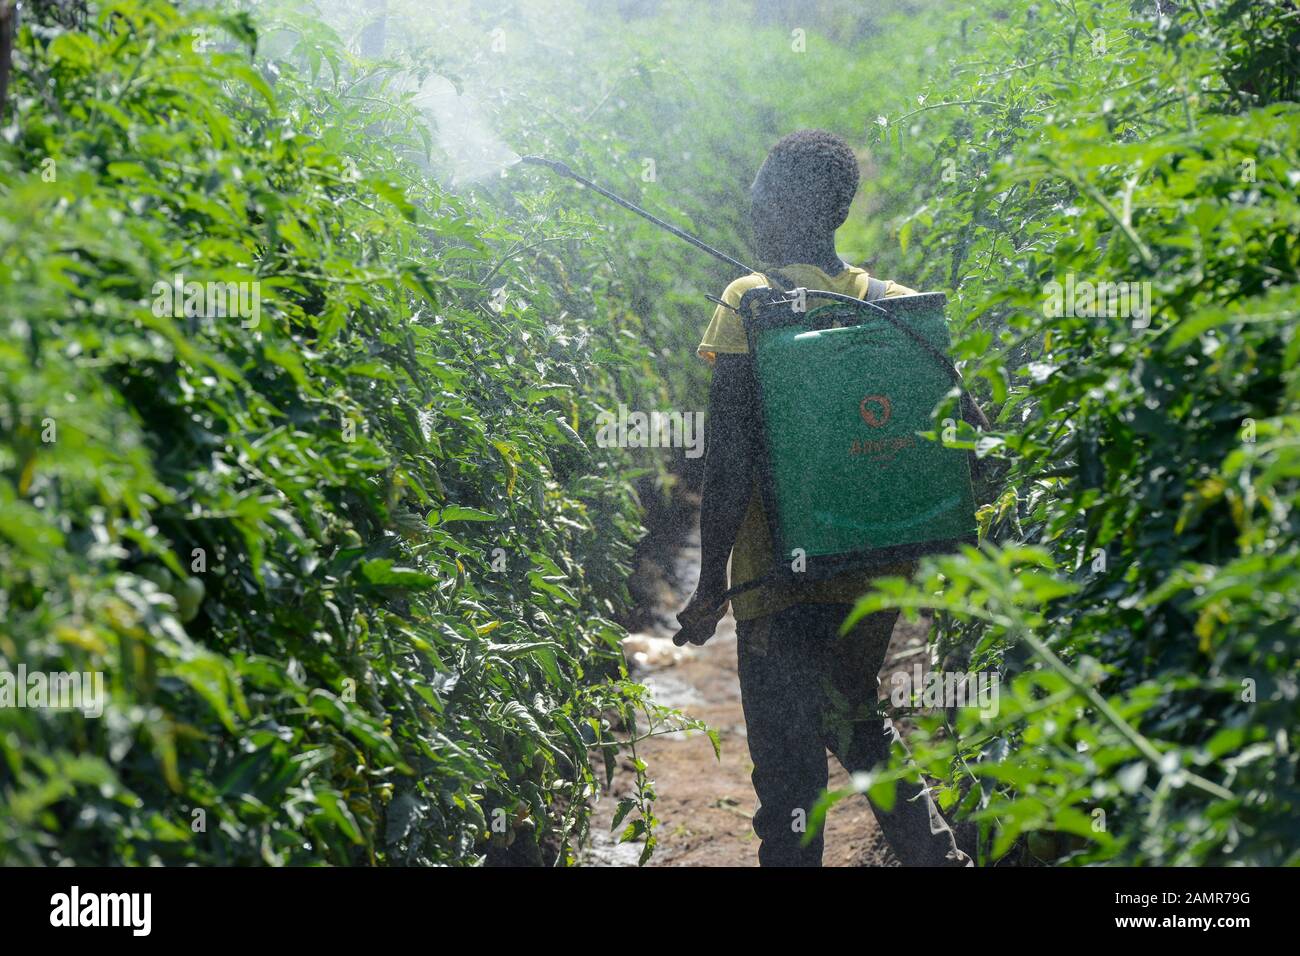 ZAMBIE, Mazabuka, production de tomates, pulvérisation de pesticides et de fongicides, contamination Banque D'Images